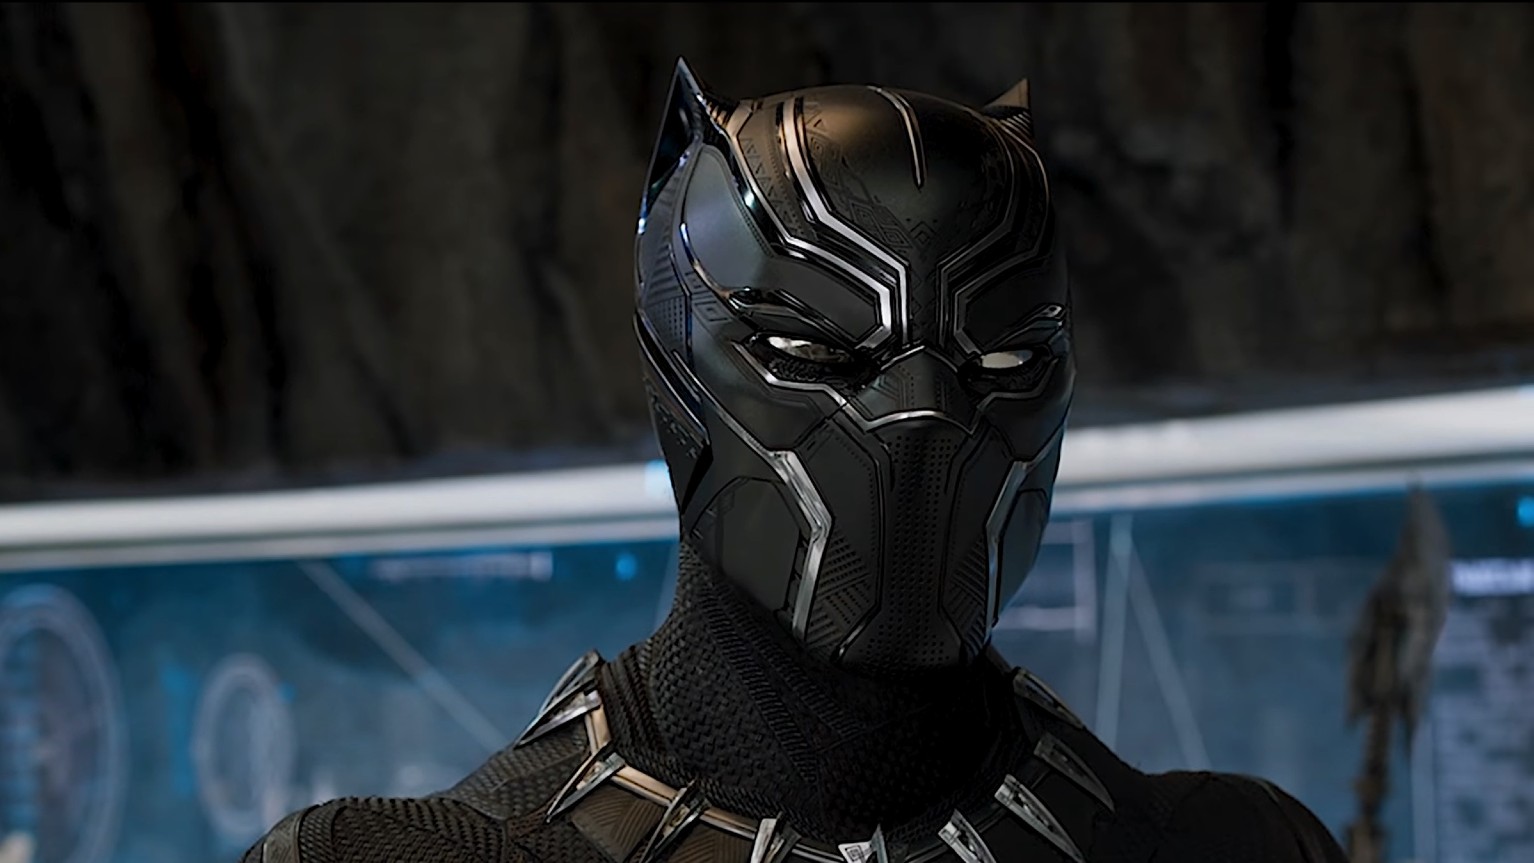  Fortnite item shop: Black Panther, Captain Marvel, and Green Arrow skins leaked 